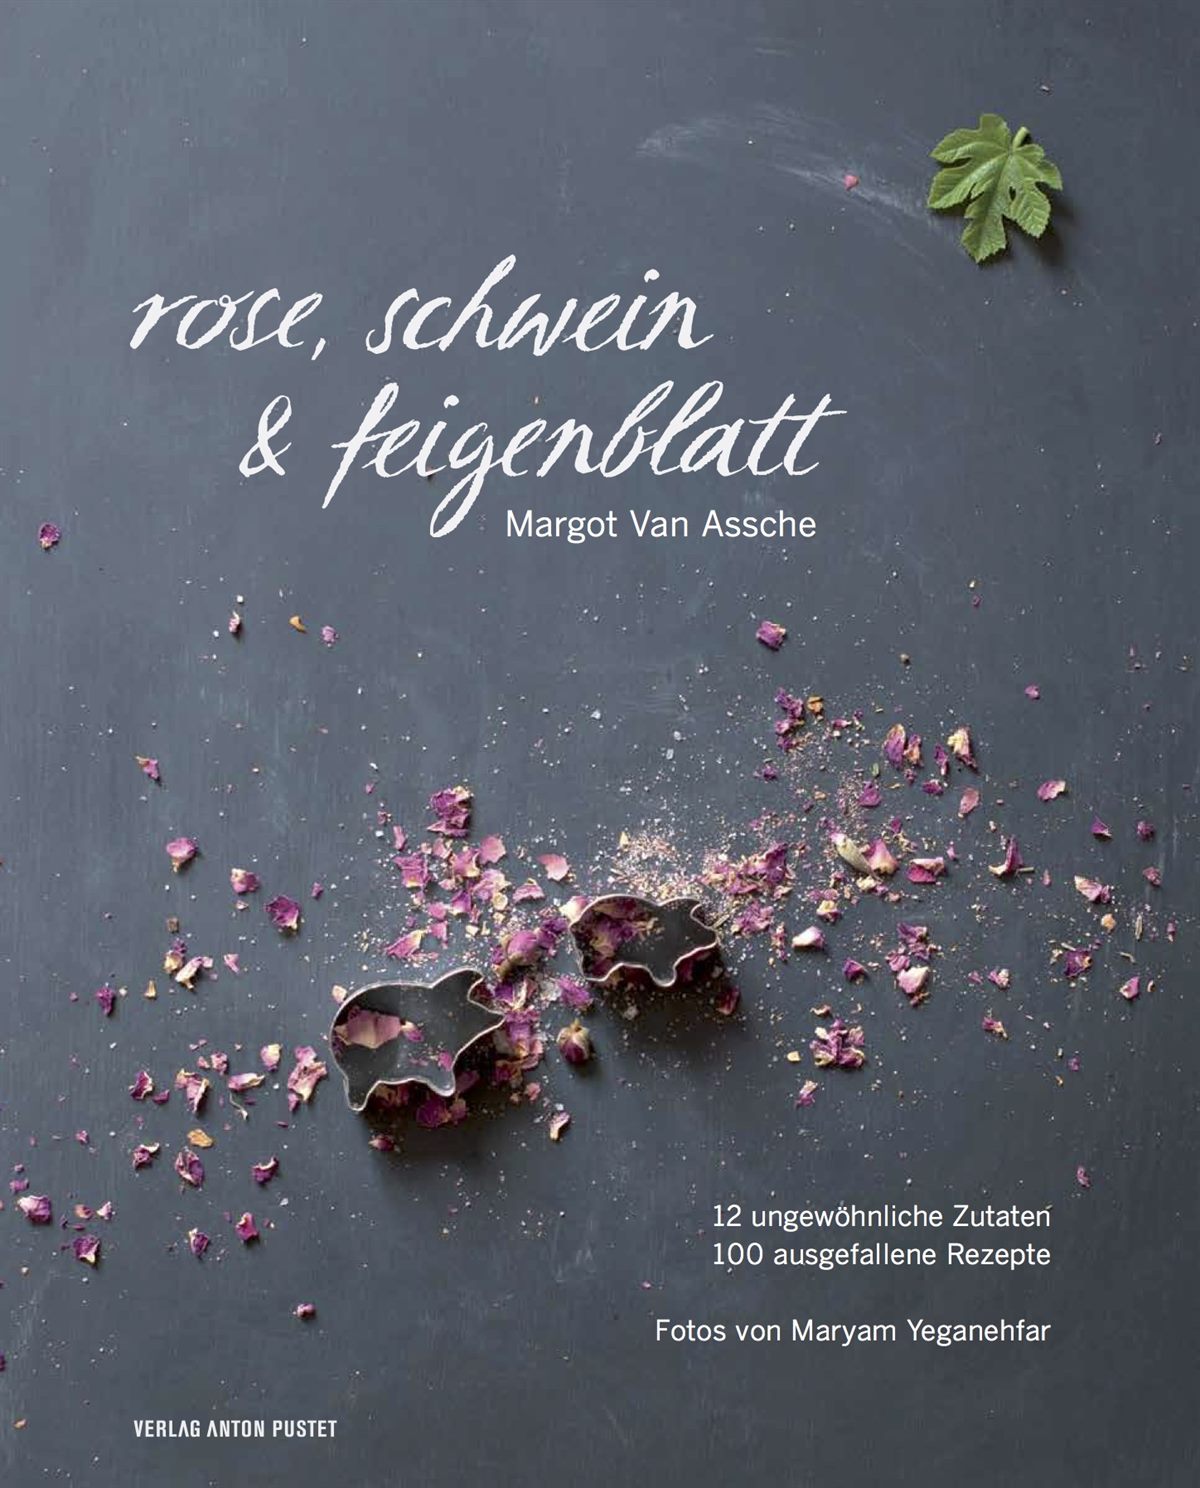 Einladung zur Buchpräsentation: Rose, Schwein & Feigenblatt